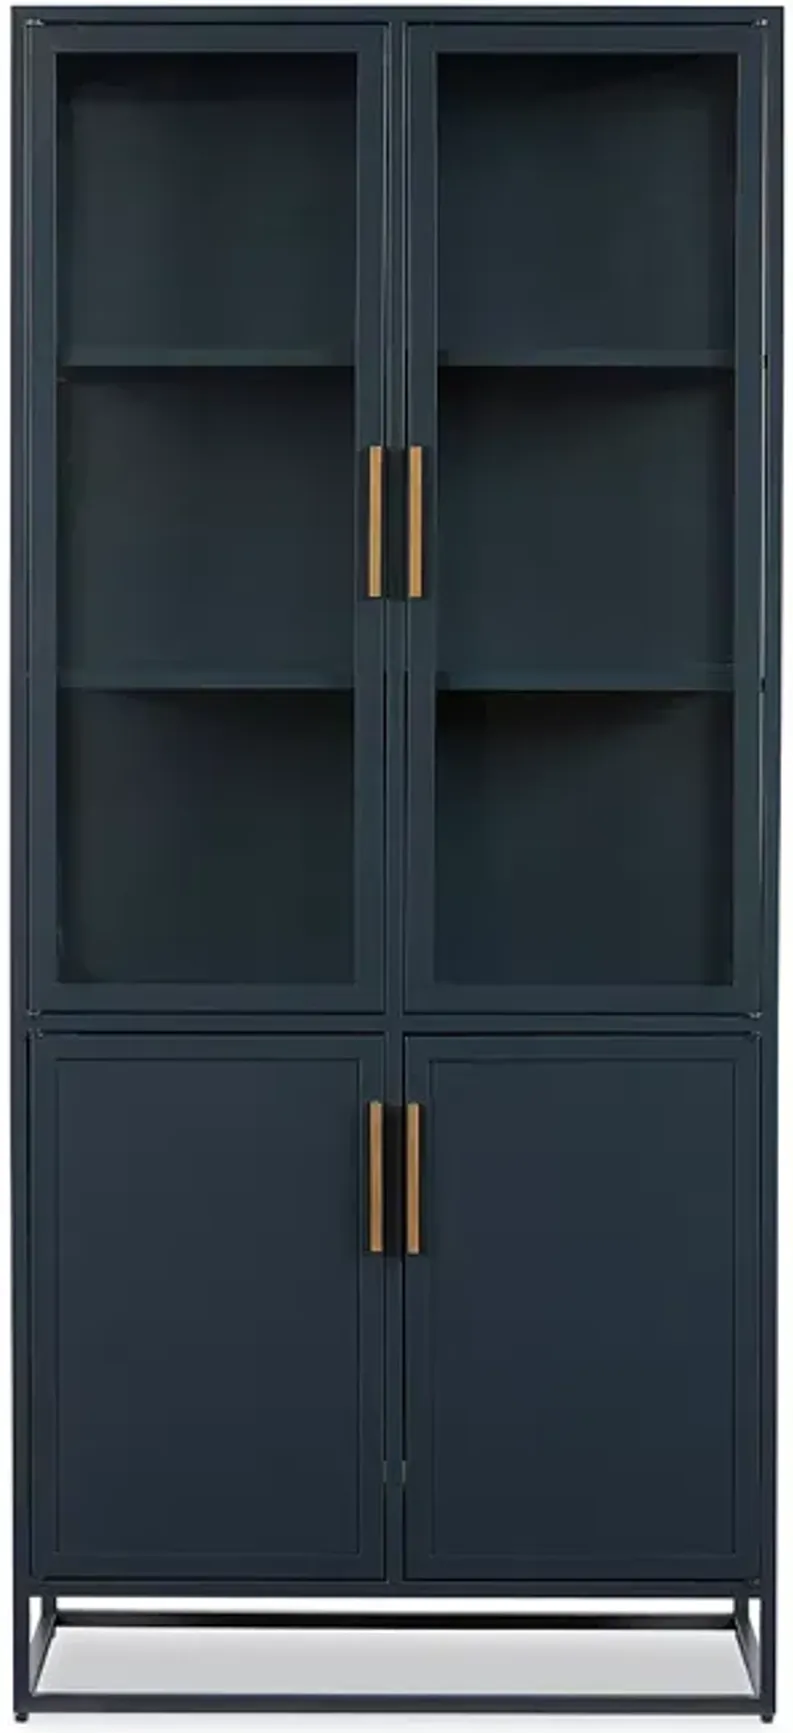 Bloomingdale's Santorini Tall Cabinet